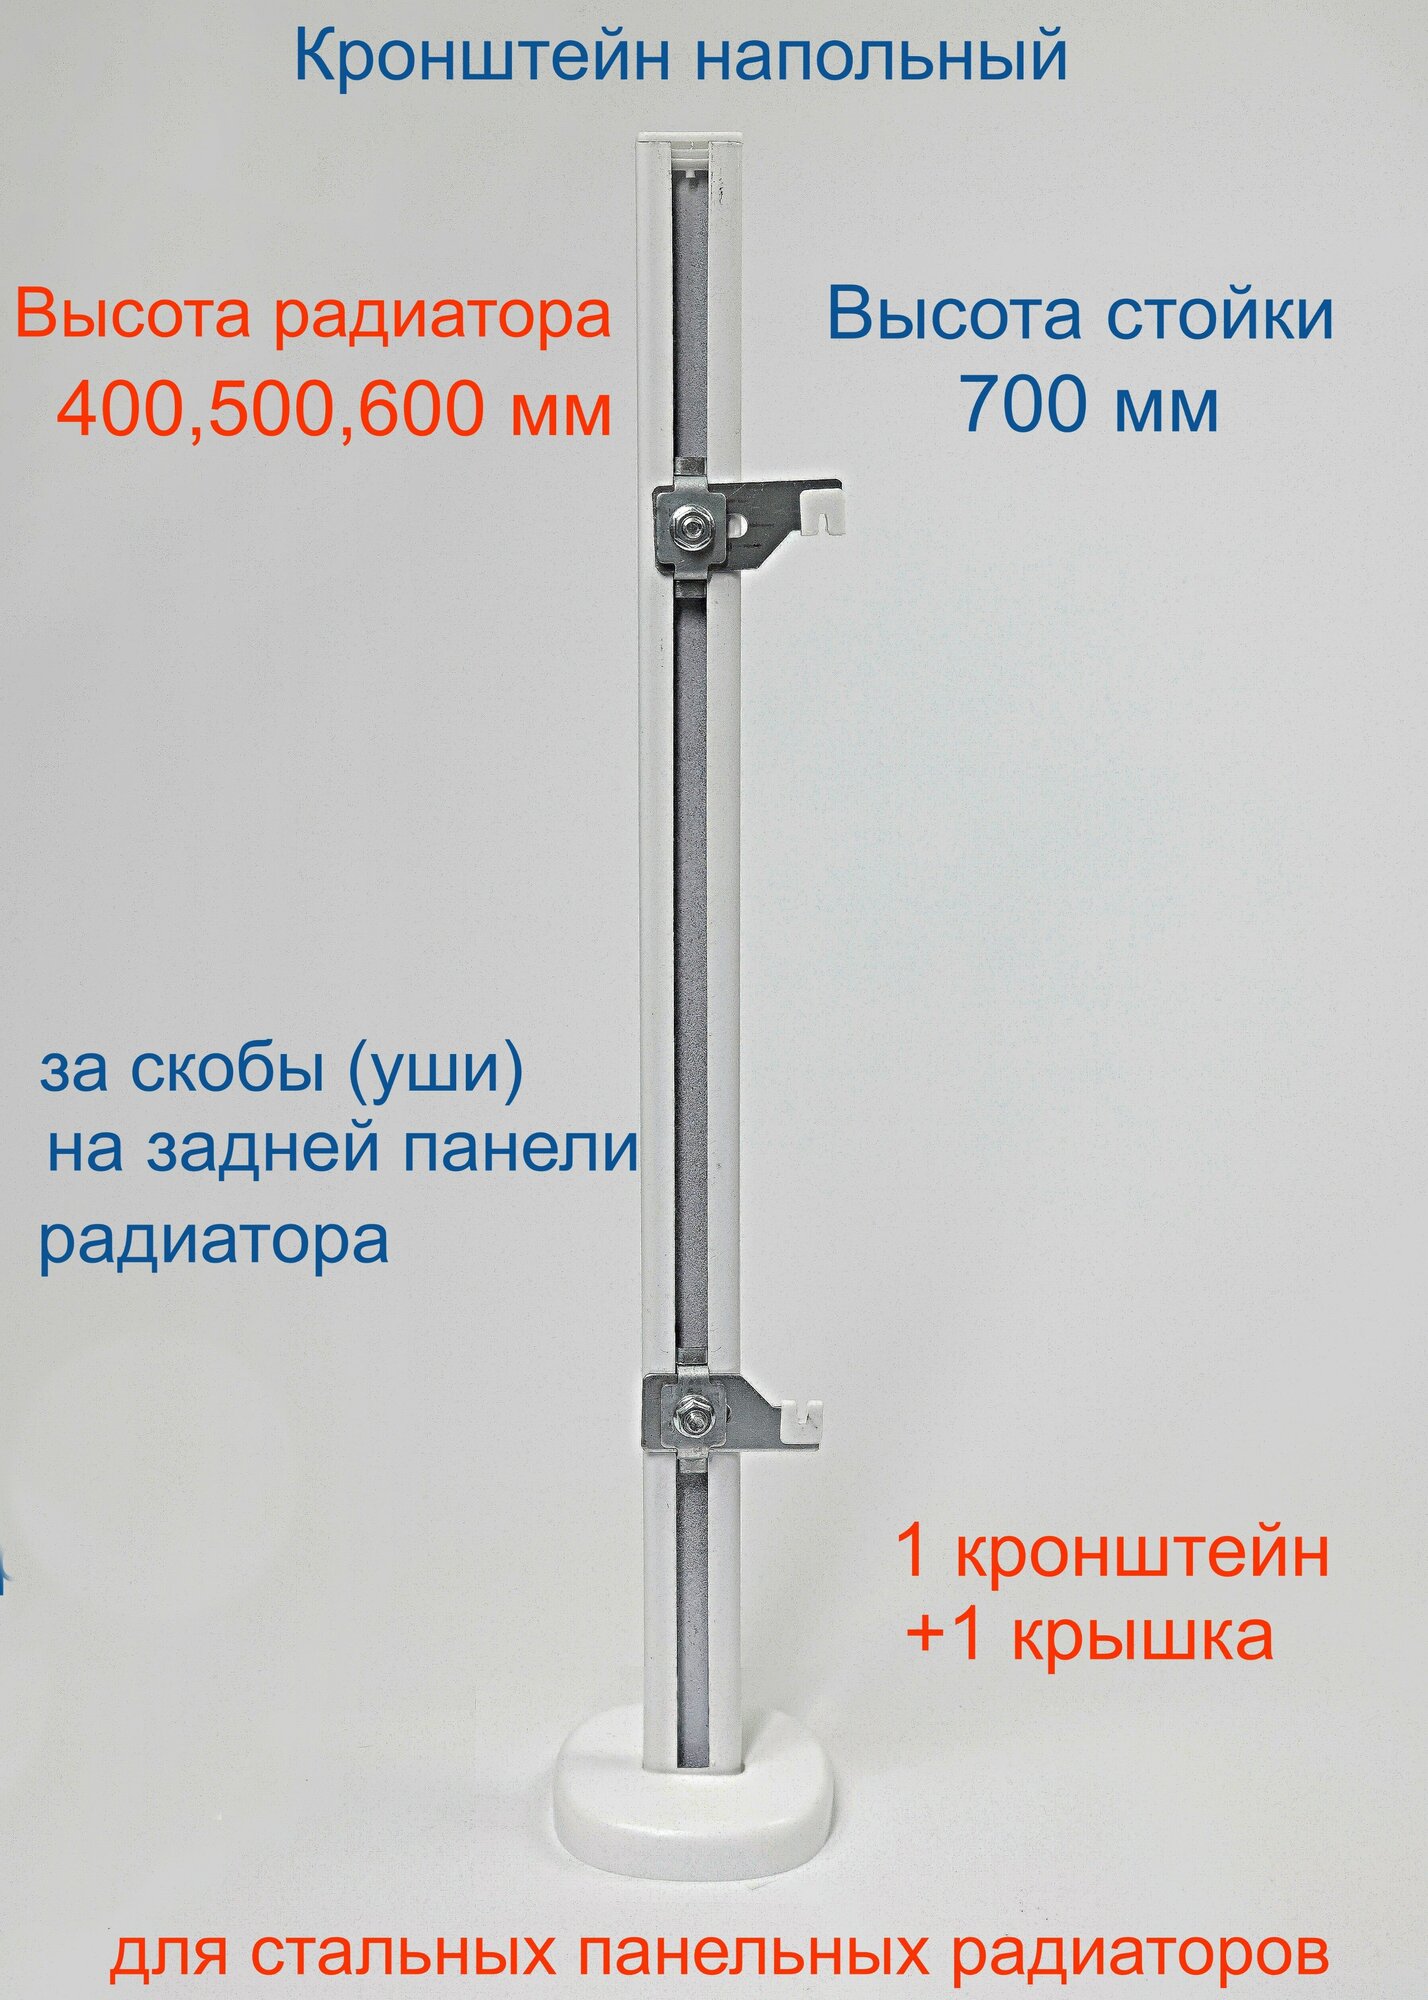 Кронштейн напольный регулируемый Кайрос KHZ4.70 для стальных панельных радиаторов высотой 400, 500, 600 мм (высота стойки 700 мм)